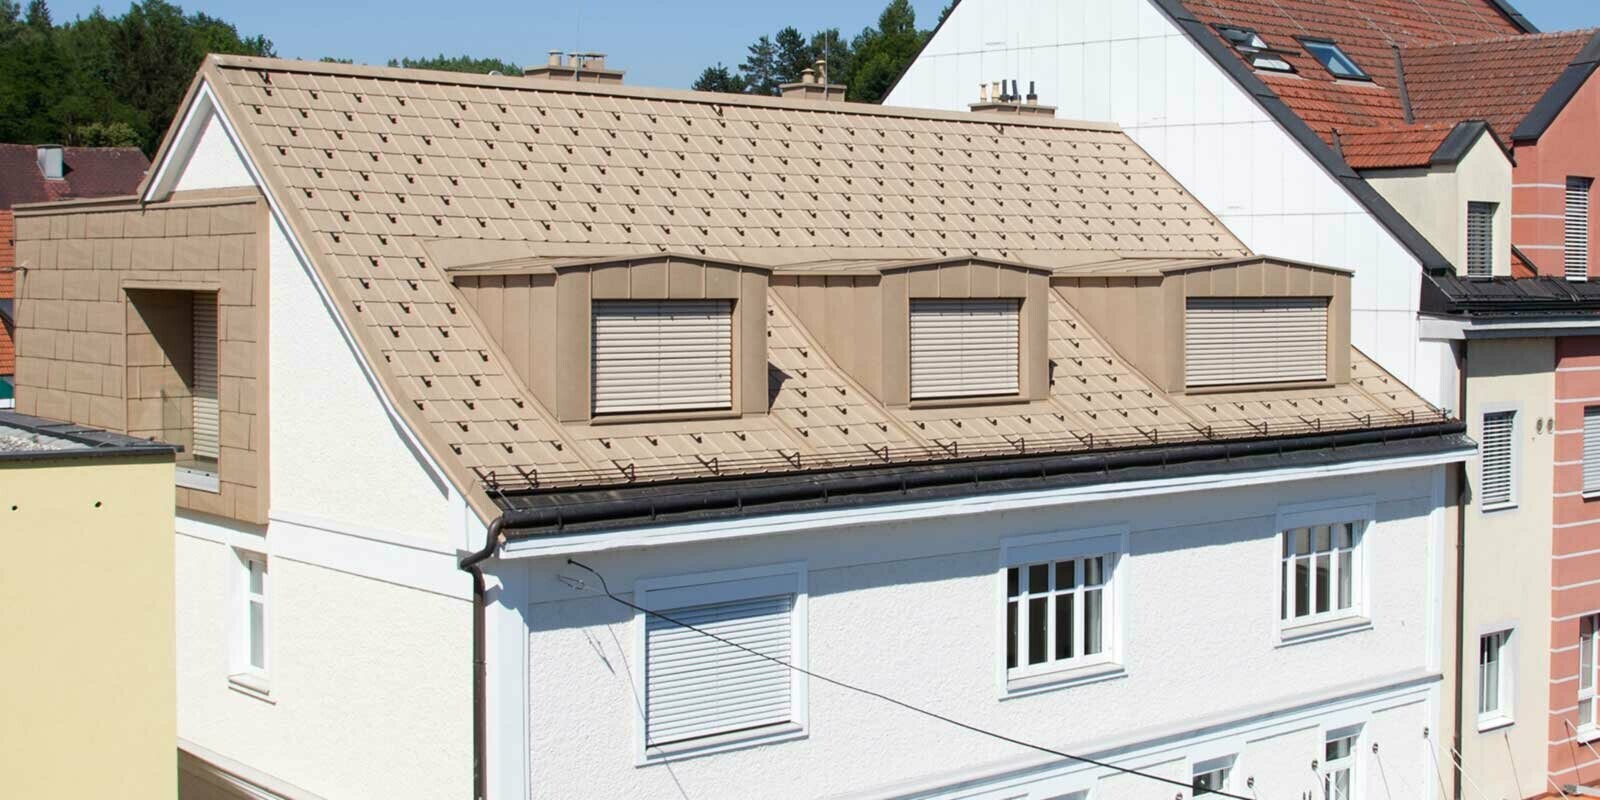 Ristrutturazione del tetto con pannelli FX.12 PREFA marrone sahara e tre abbaini